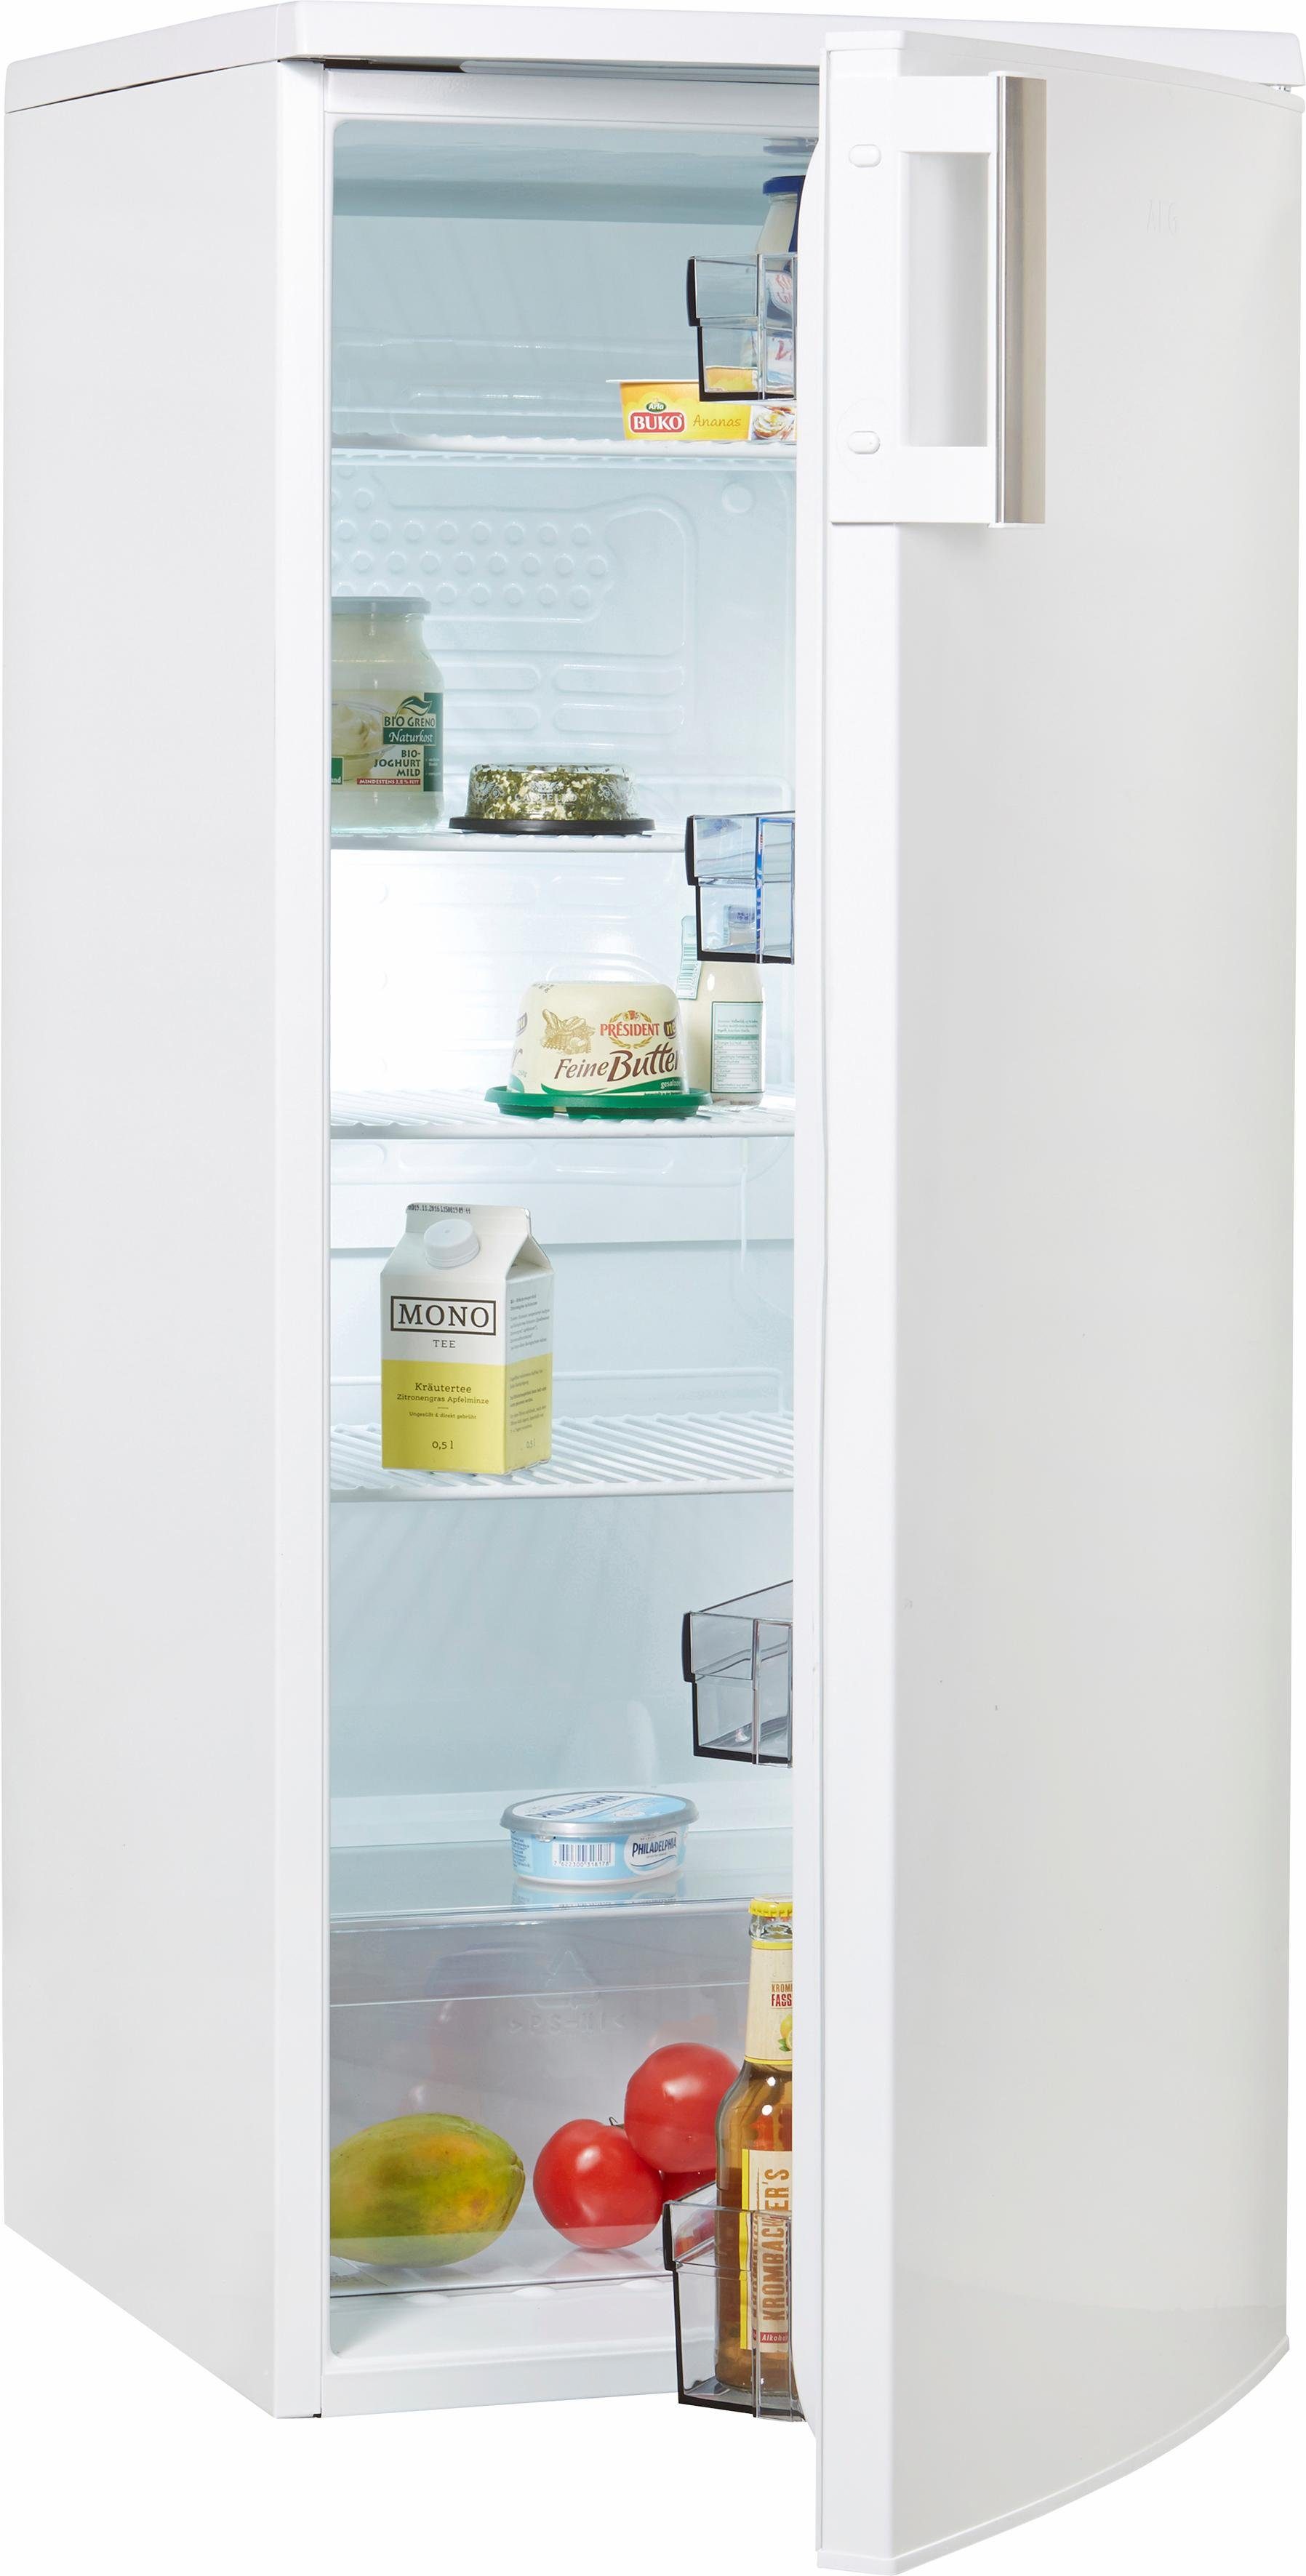 AEG Vollraumkühlschrank RKB42511AW, 125 cm hoch, 55 cm breit, 125 cm hoch  online kaufen | OTTO